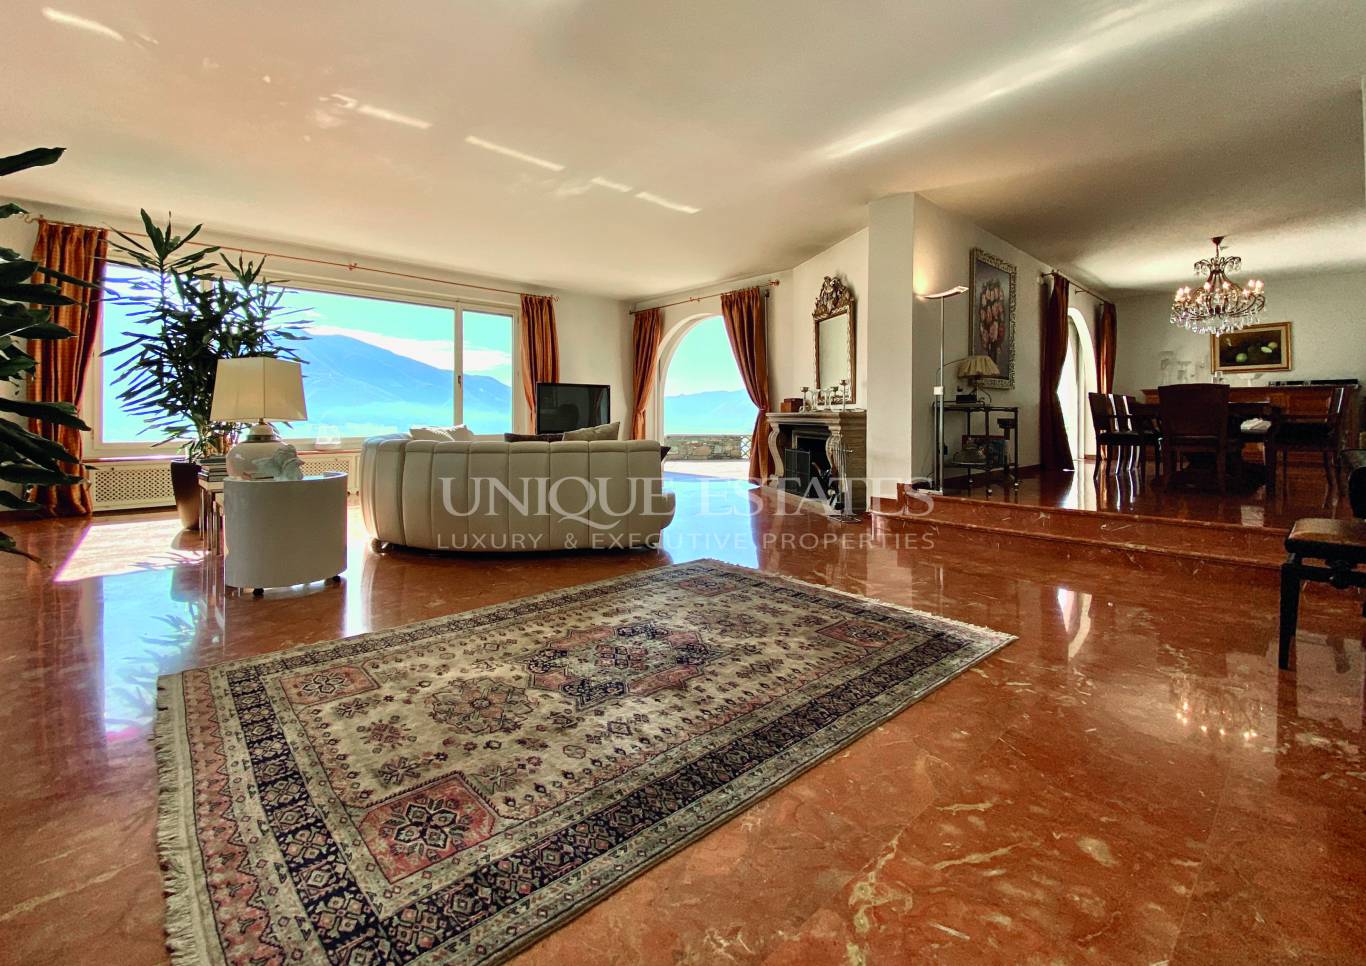 Къща за продажба в Брионе сопра Минузио,  - код на имота: N15232 - image 5